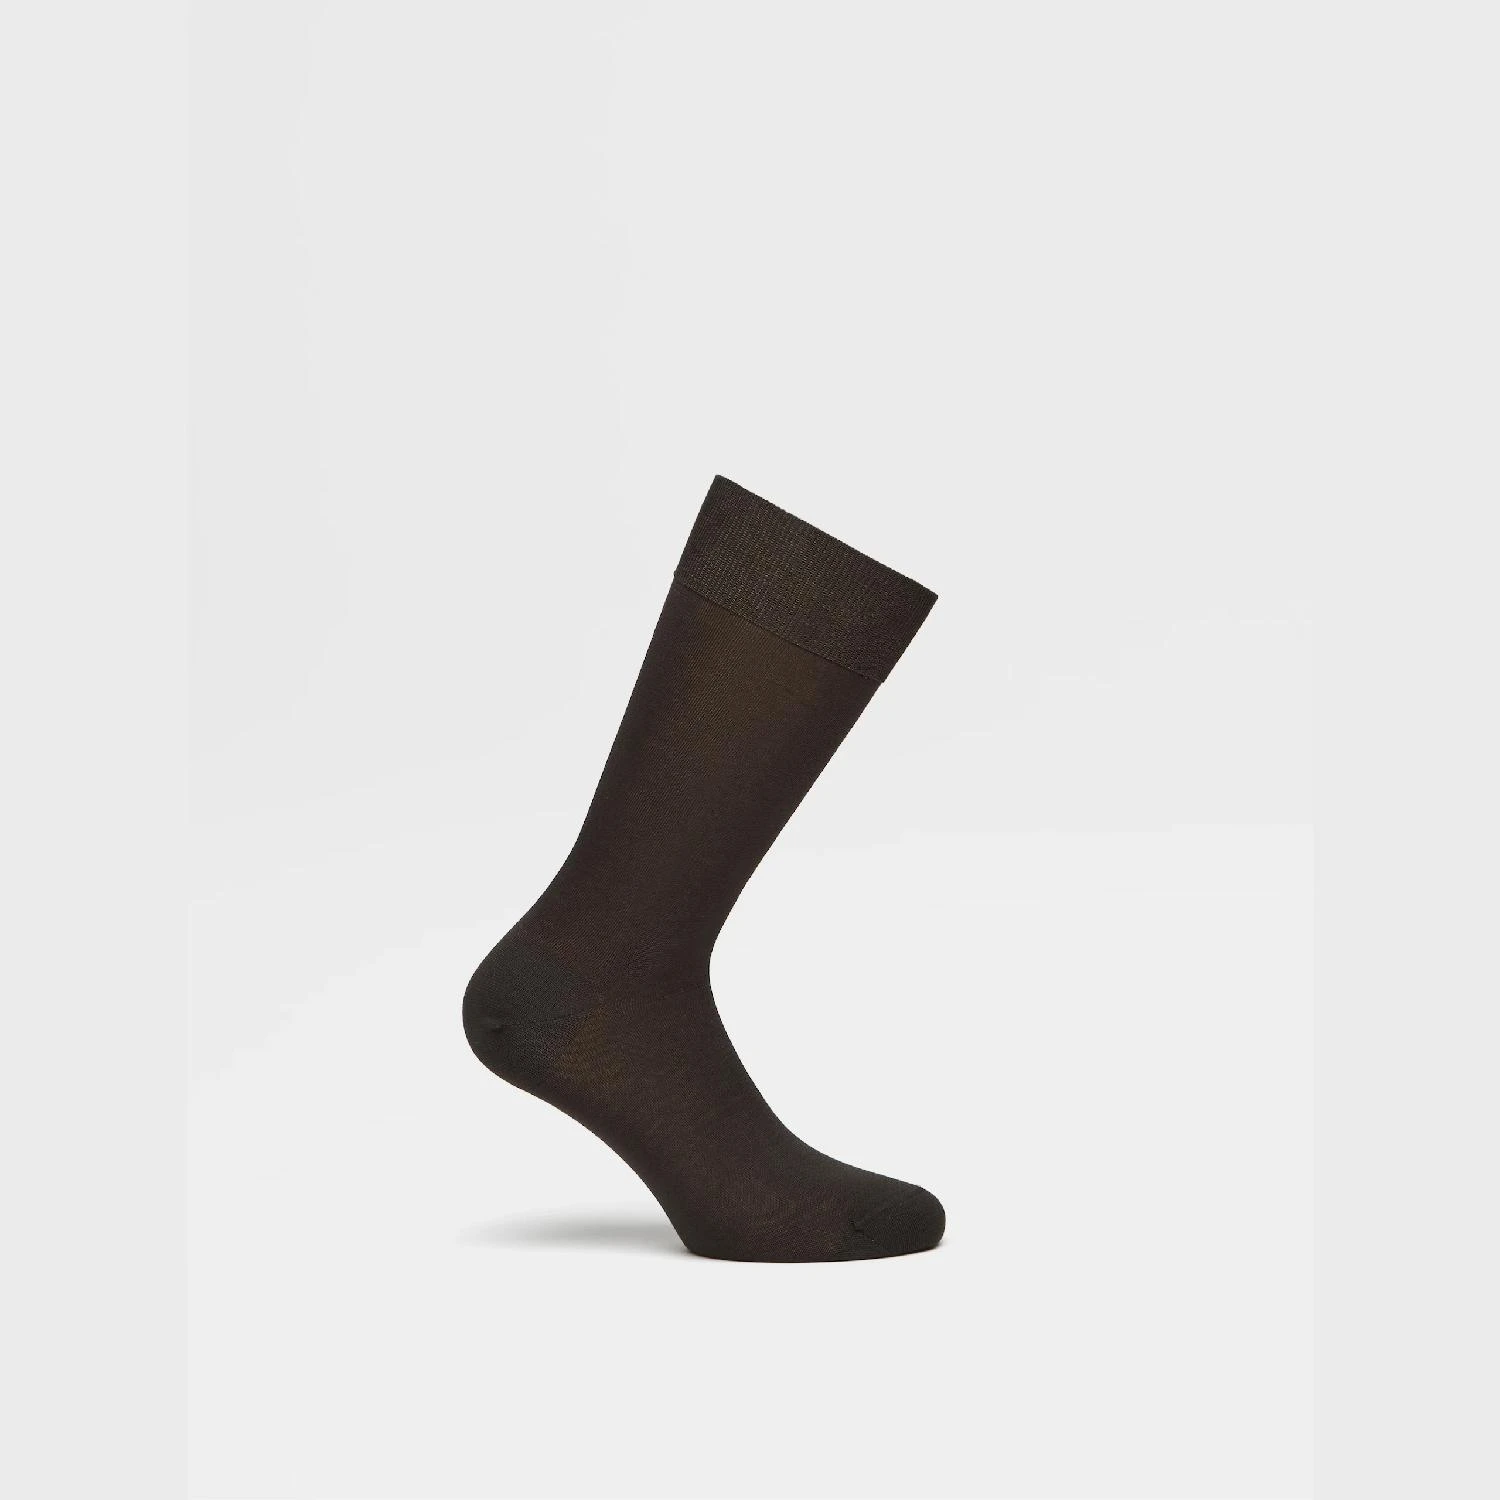 包邮包税【预售7天发货】 ZEGNA杰尼亚 23秋冬 男士 袜子 Dark Grey Cotton Socks N4V40-011-022 商品